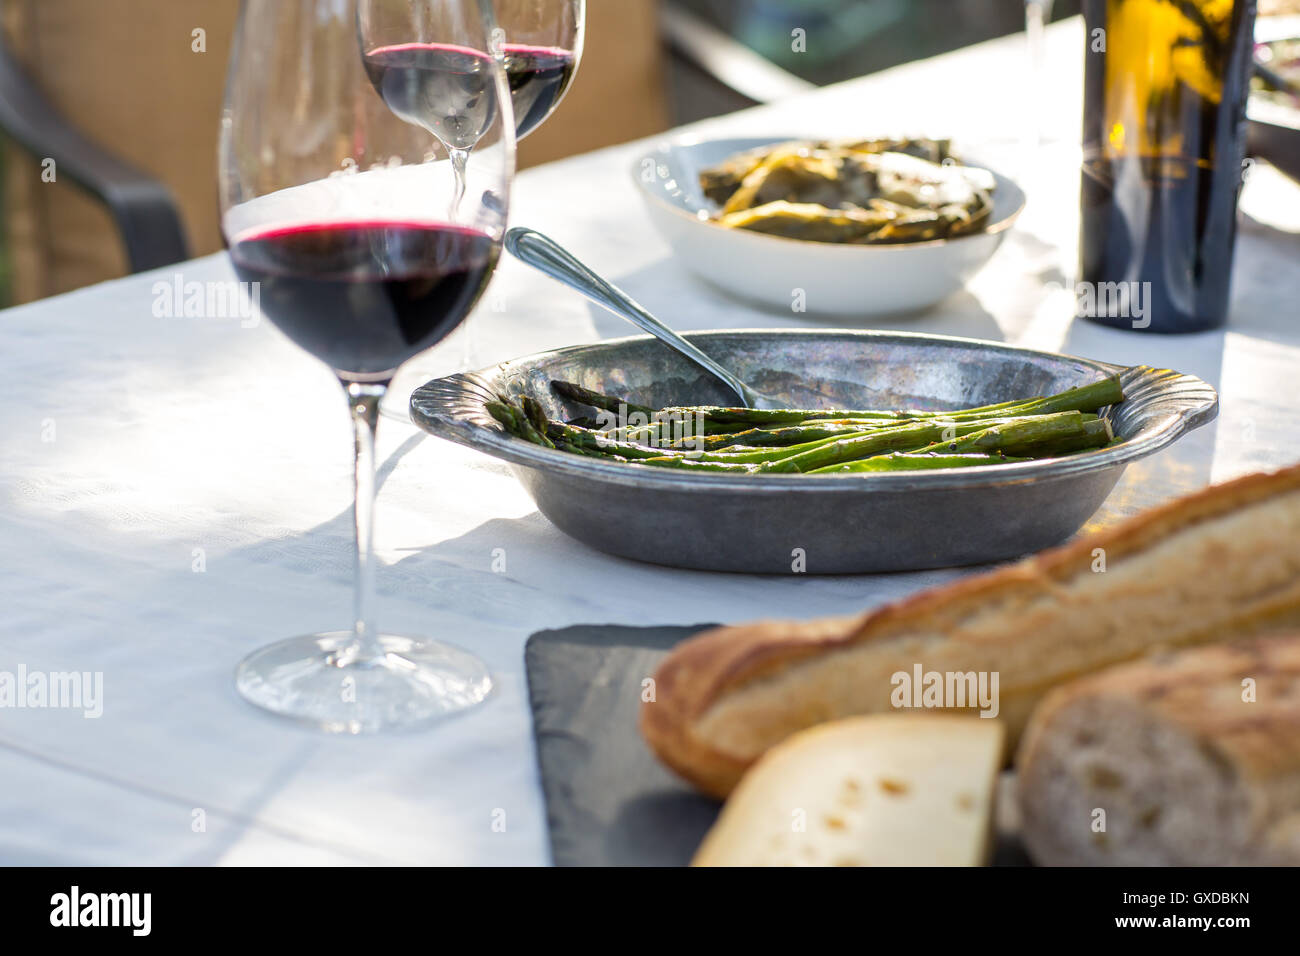 Partie jardin, table avec du vin rouge, plateau de fromages et de haricots verts Banque D'Images